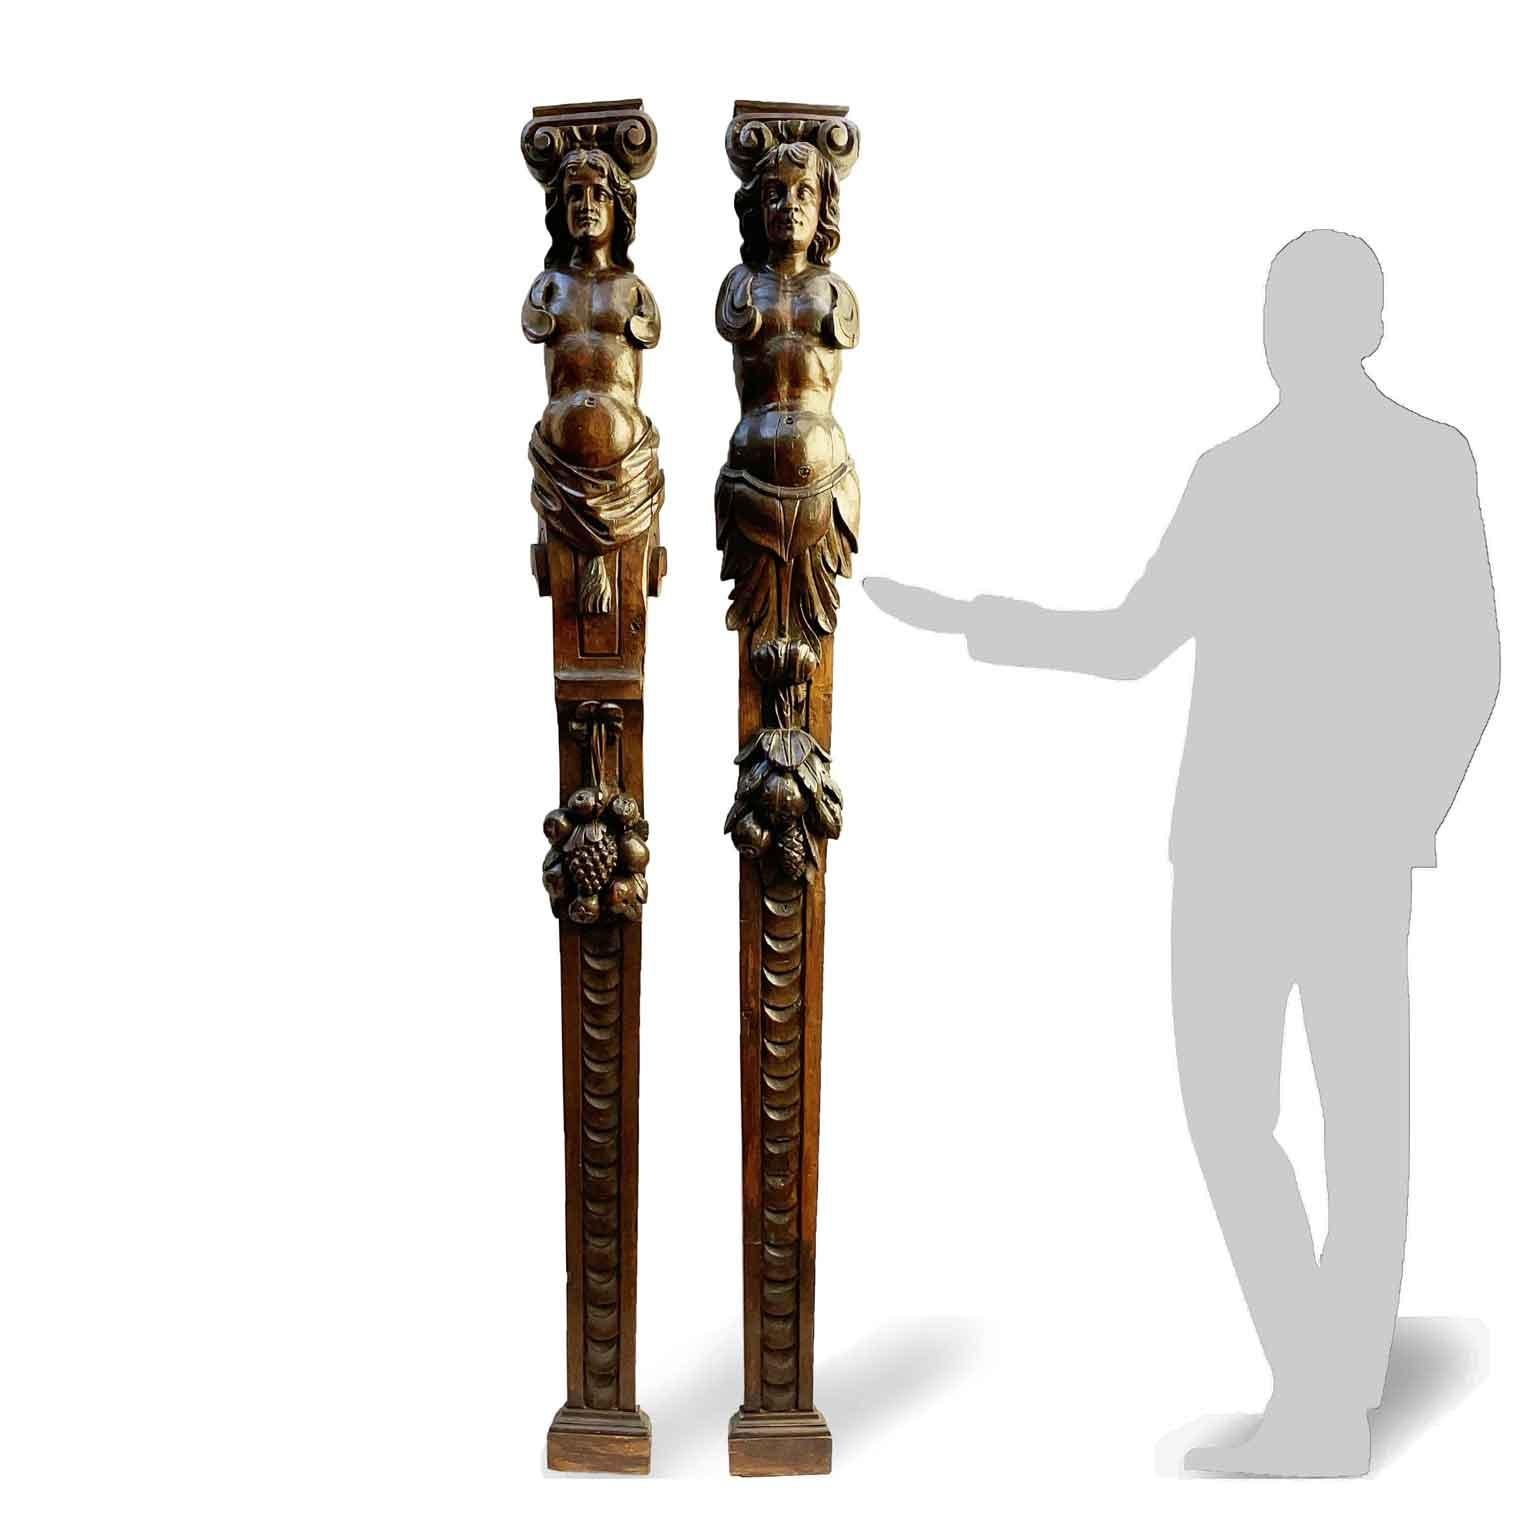 Paire unique de cariatides italiennes sculptées à la main, datant de 1500 environ, près de 83 pouces 210cm de haut, cette paire antique de sculptures Renaissance à patine sombre provient d'un ensemble choral, utilisé comme cloisons entre les